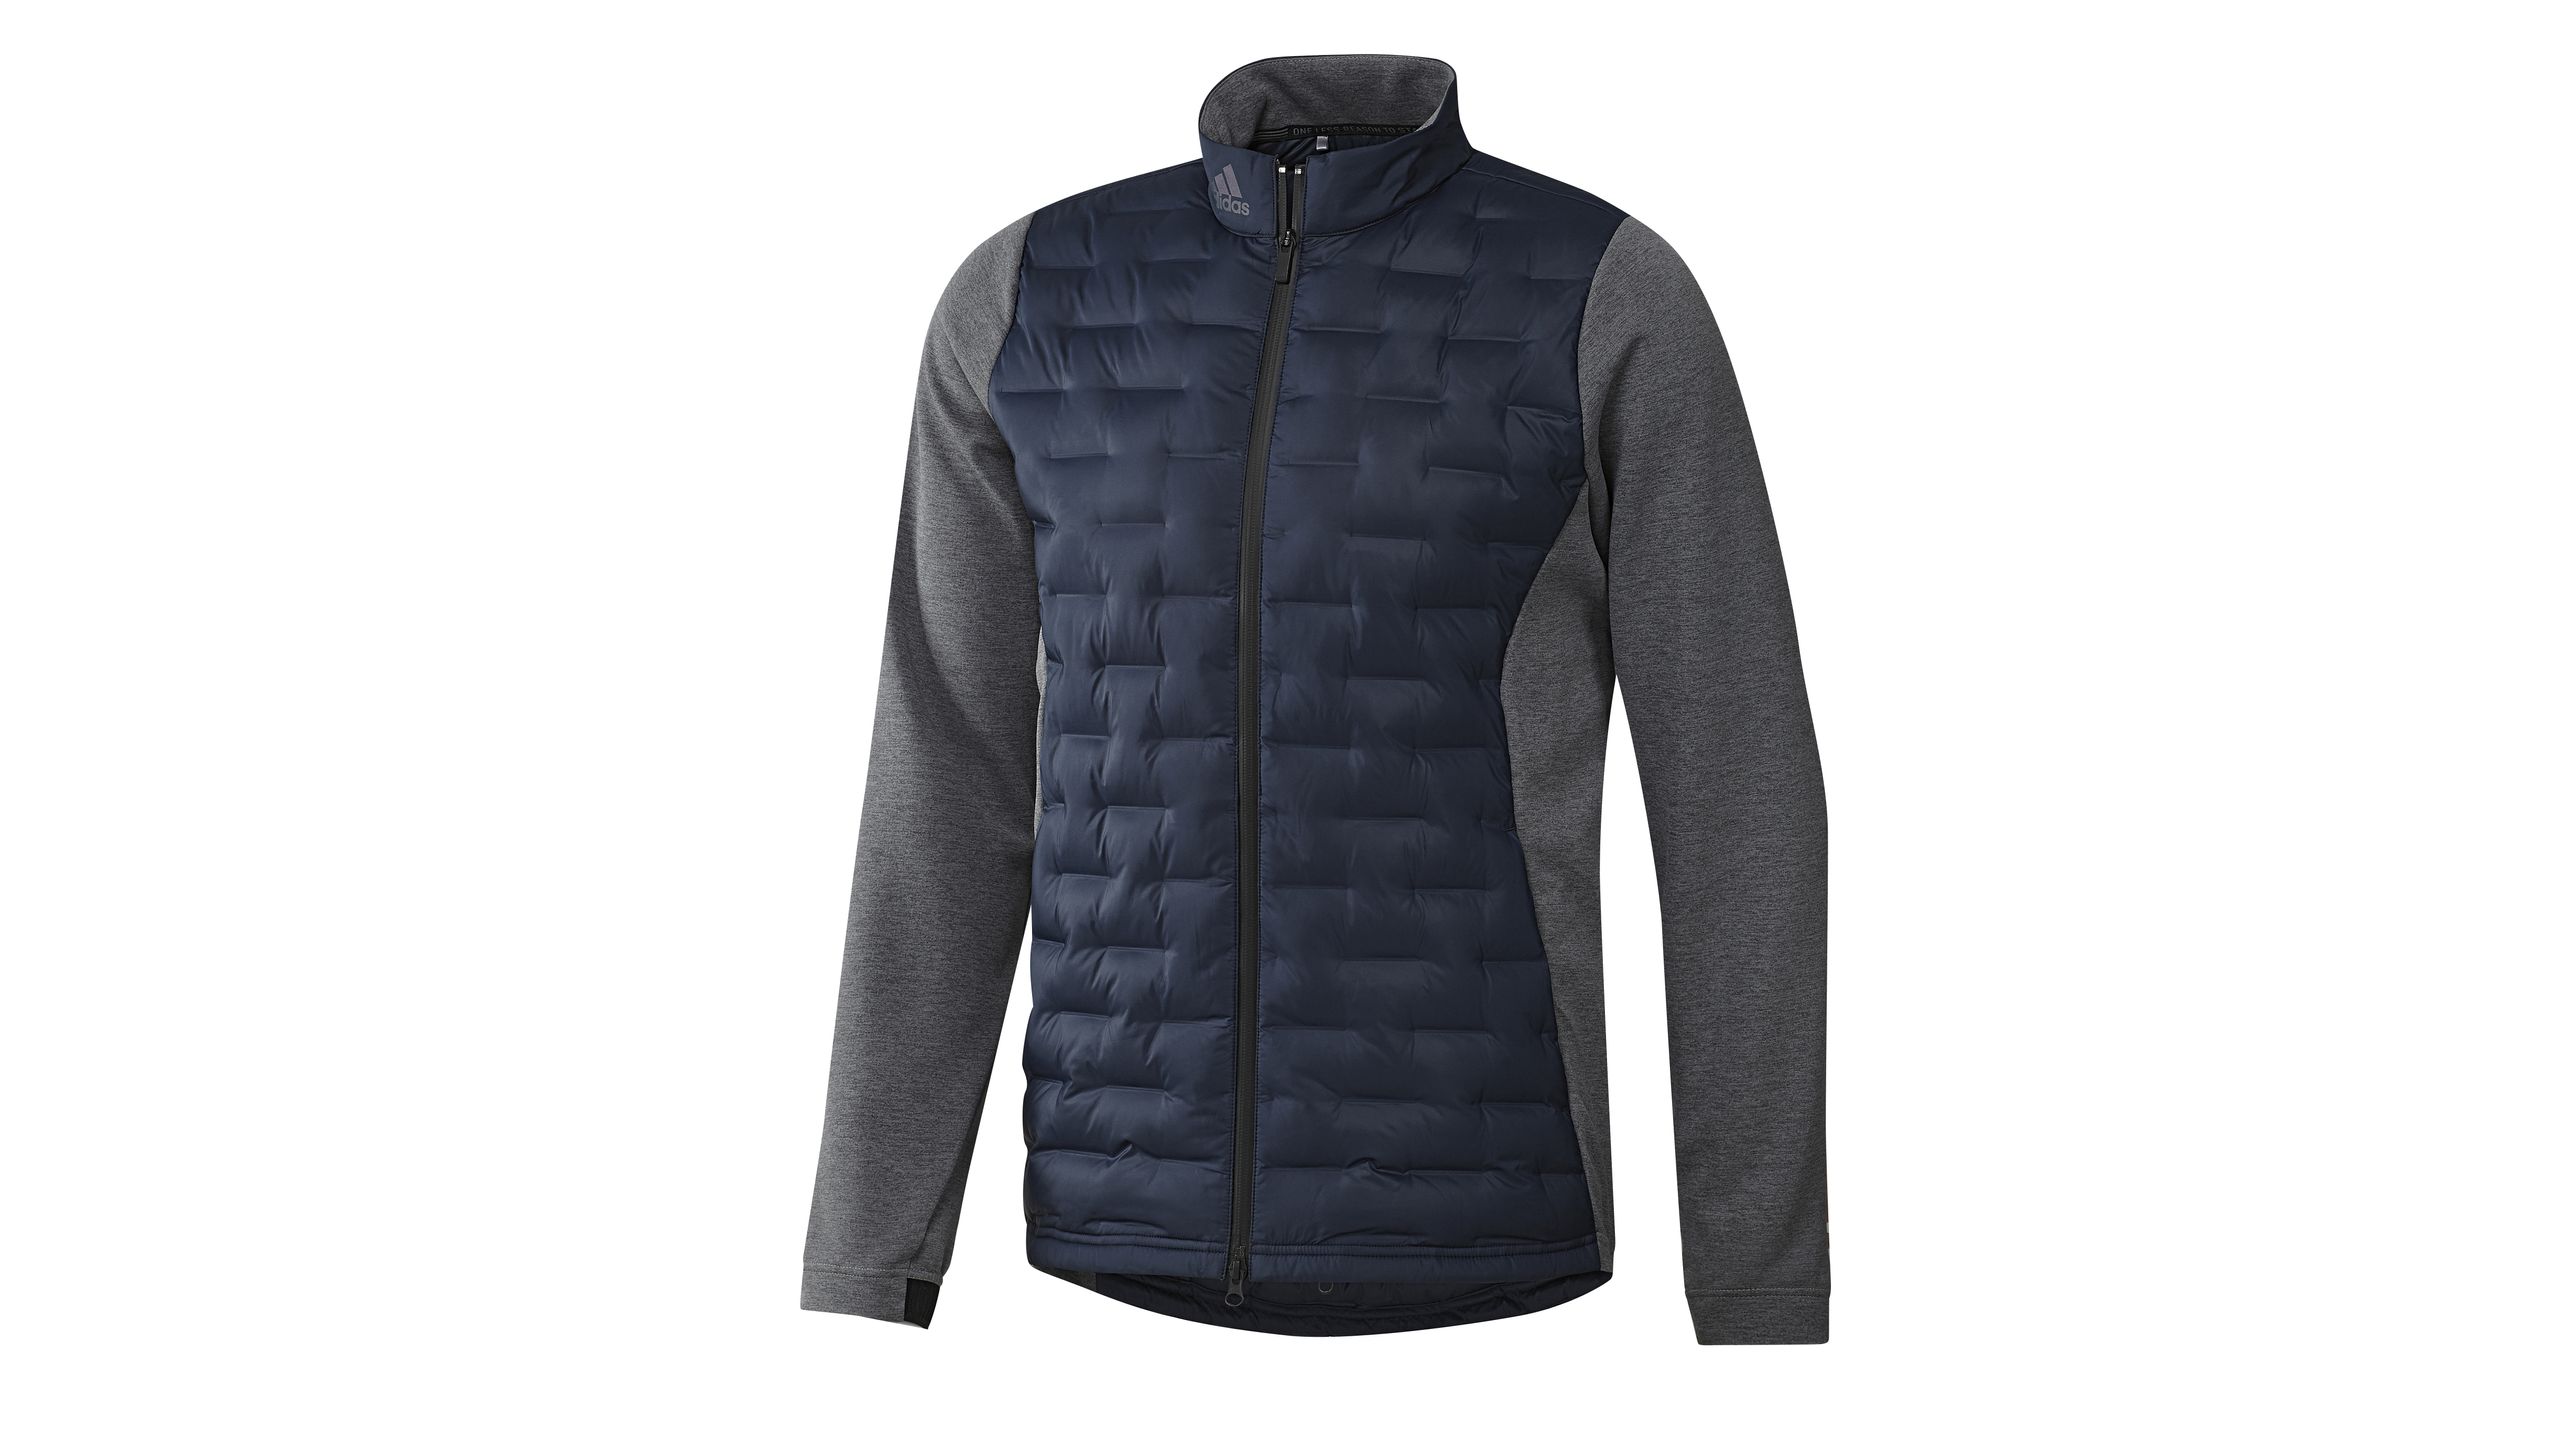  Beste Geschenke für Golfer: Adidas Frostguard Insulated Golf Jacket